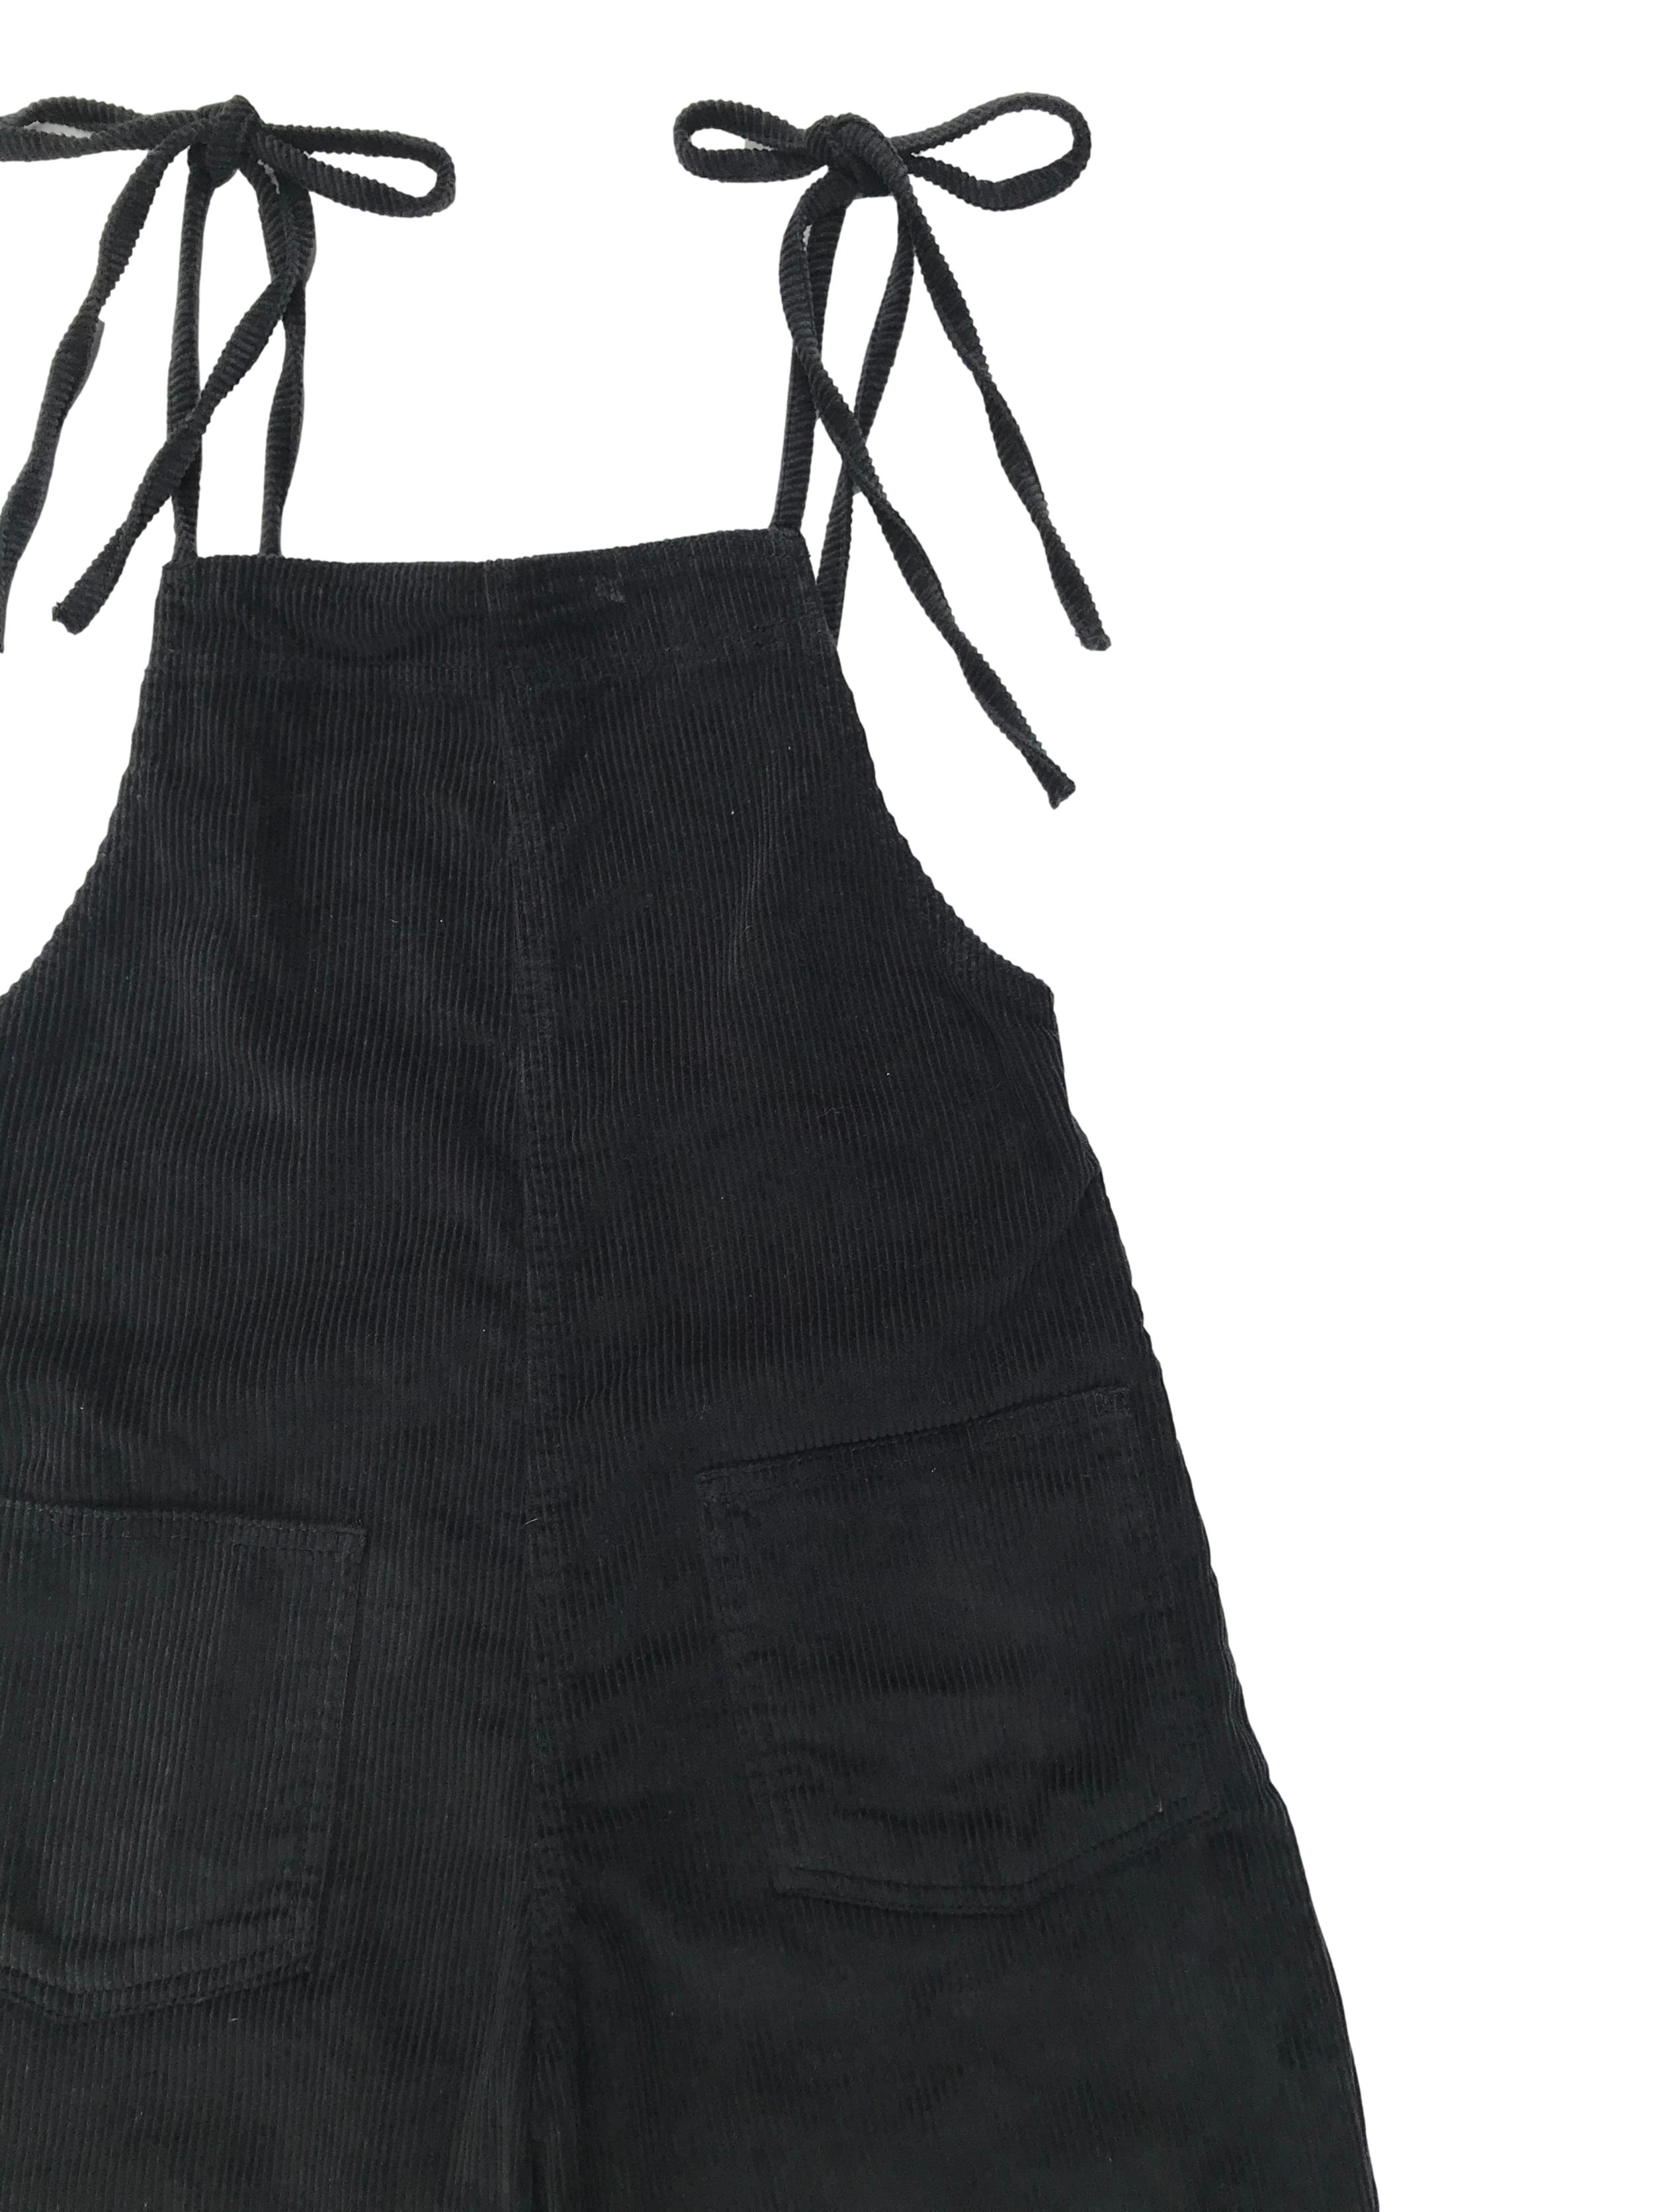 Enterizo pantalón BDC Urban Outfitters de corduroy negro 100% algodón, se amarra en los hombros, tiene bolsillos parche delanteros y cierre lateral. Precio original S/ 350